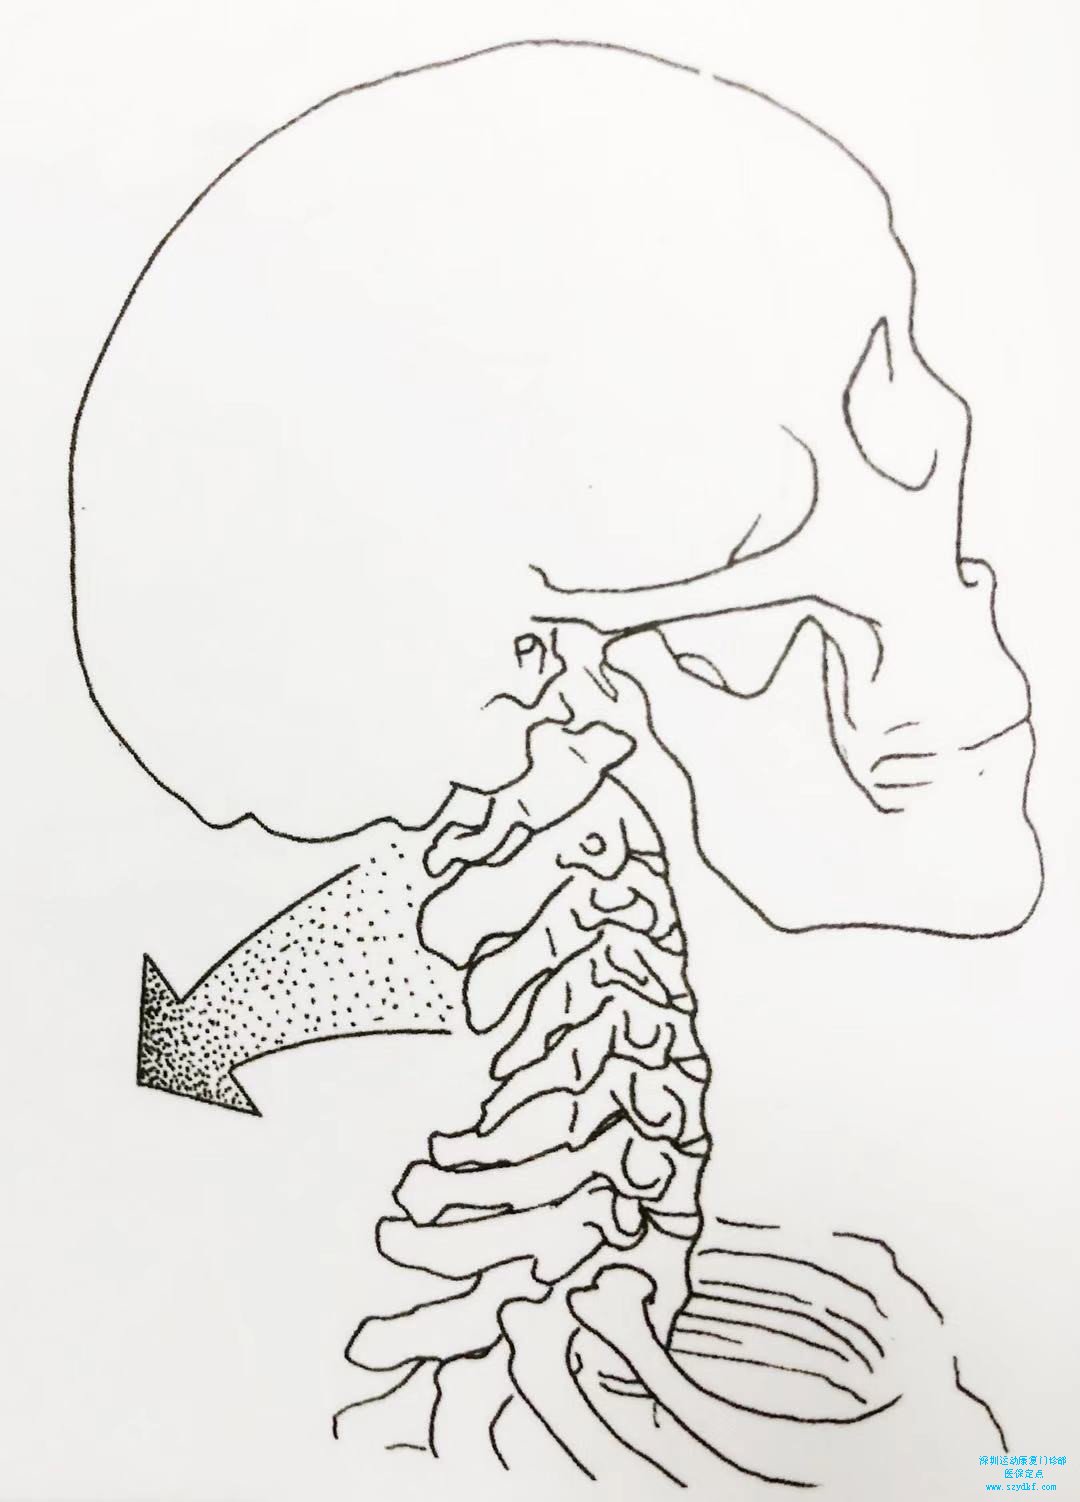 颈椎的正常生理曲度是微微前凸的